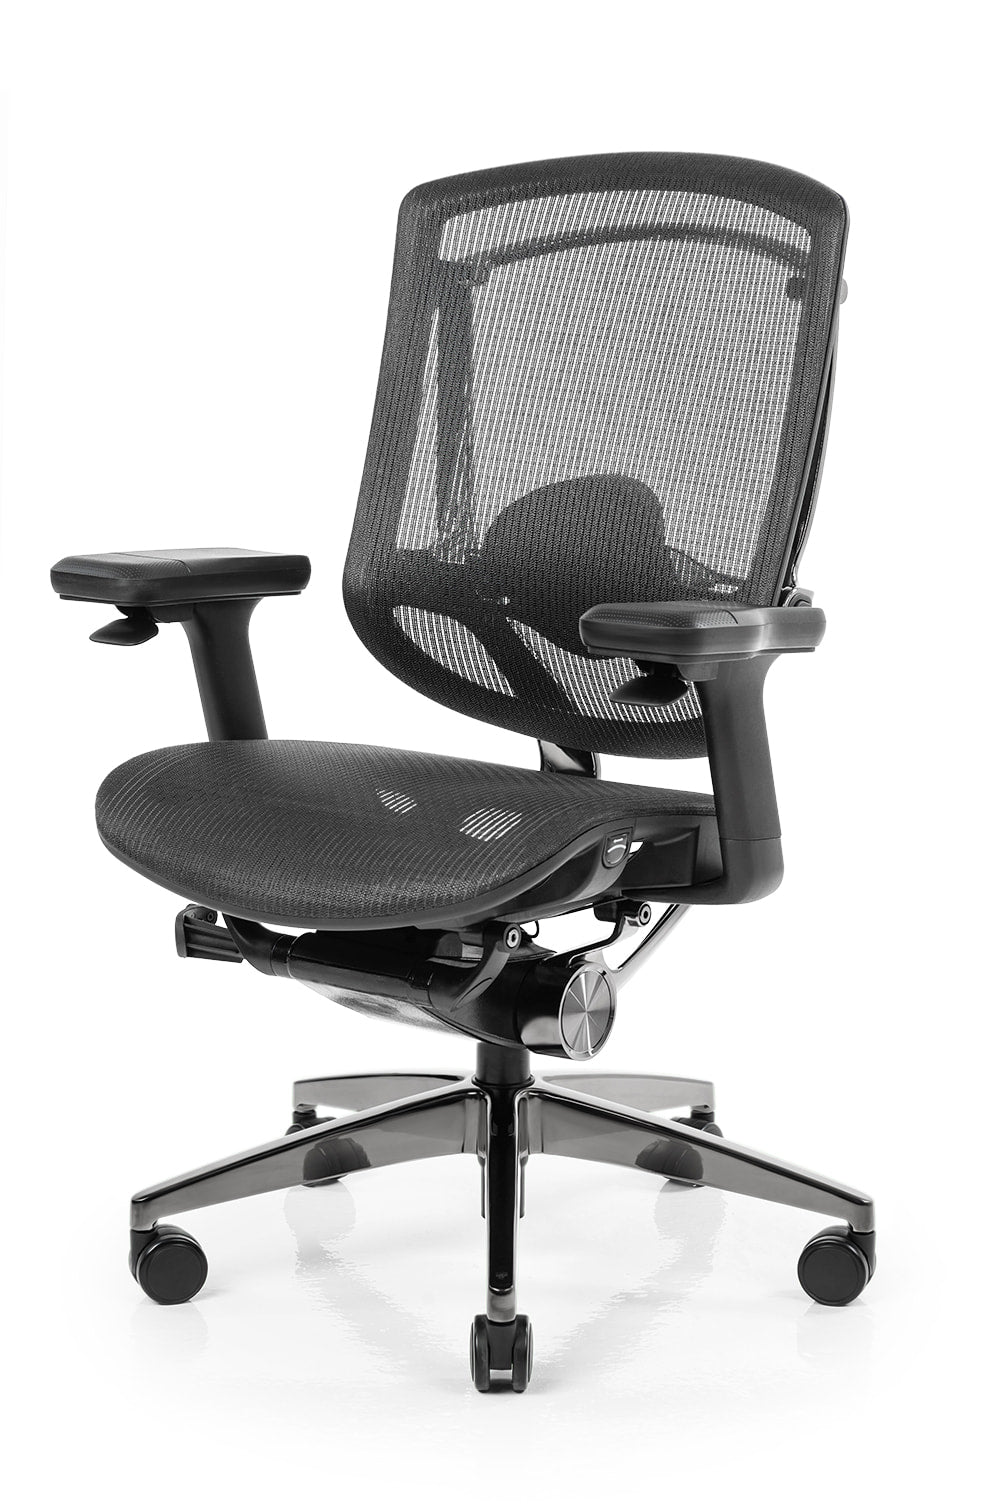 The best ergonomic office chairs, NeueChair™